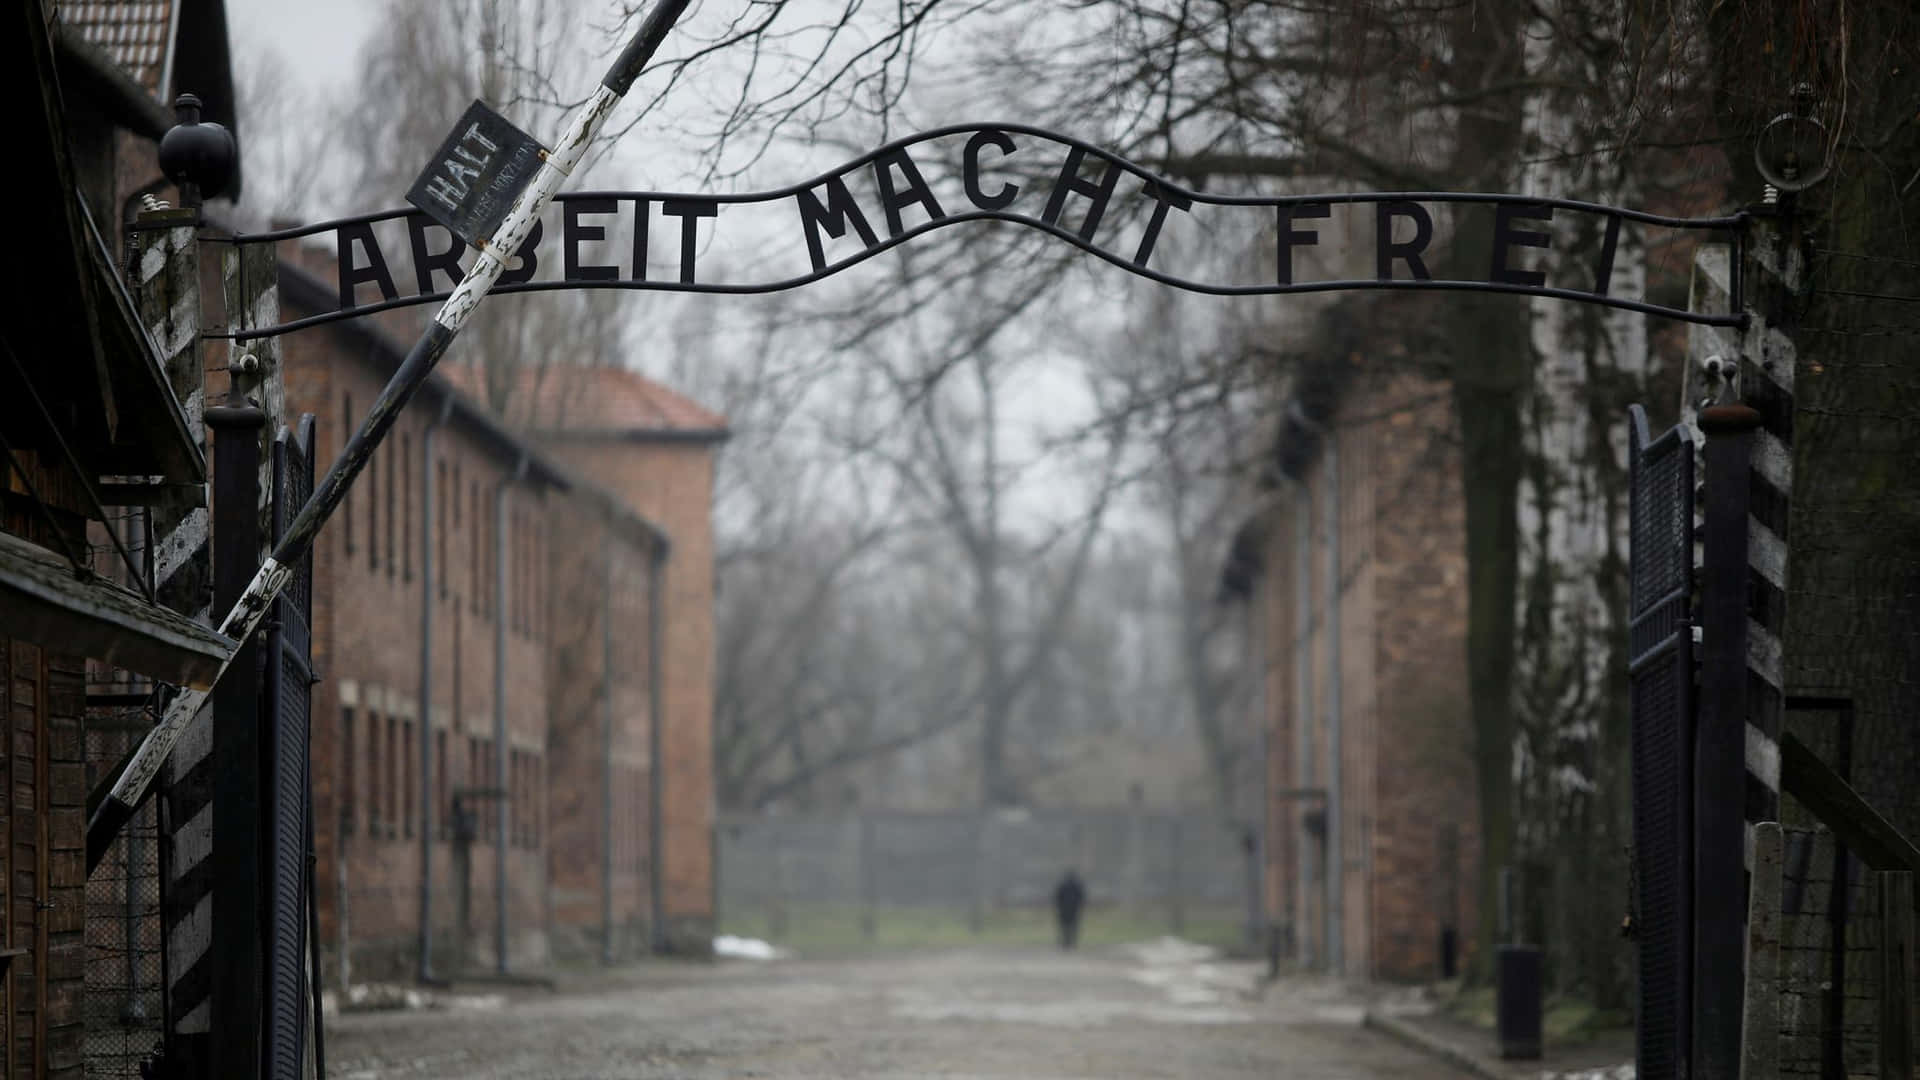 Auschwitz Birkenau Arbeit Macht Frei 2021 Picture